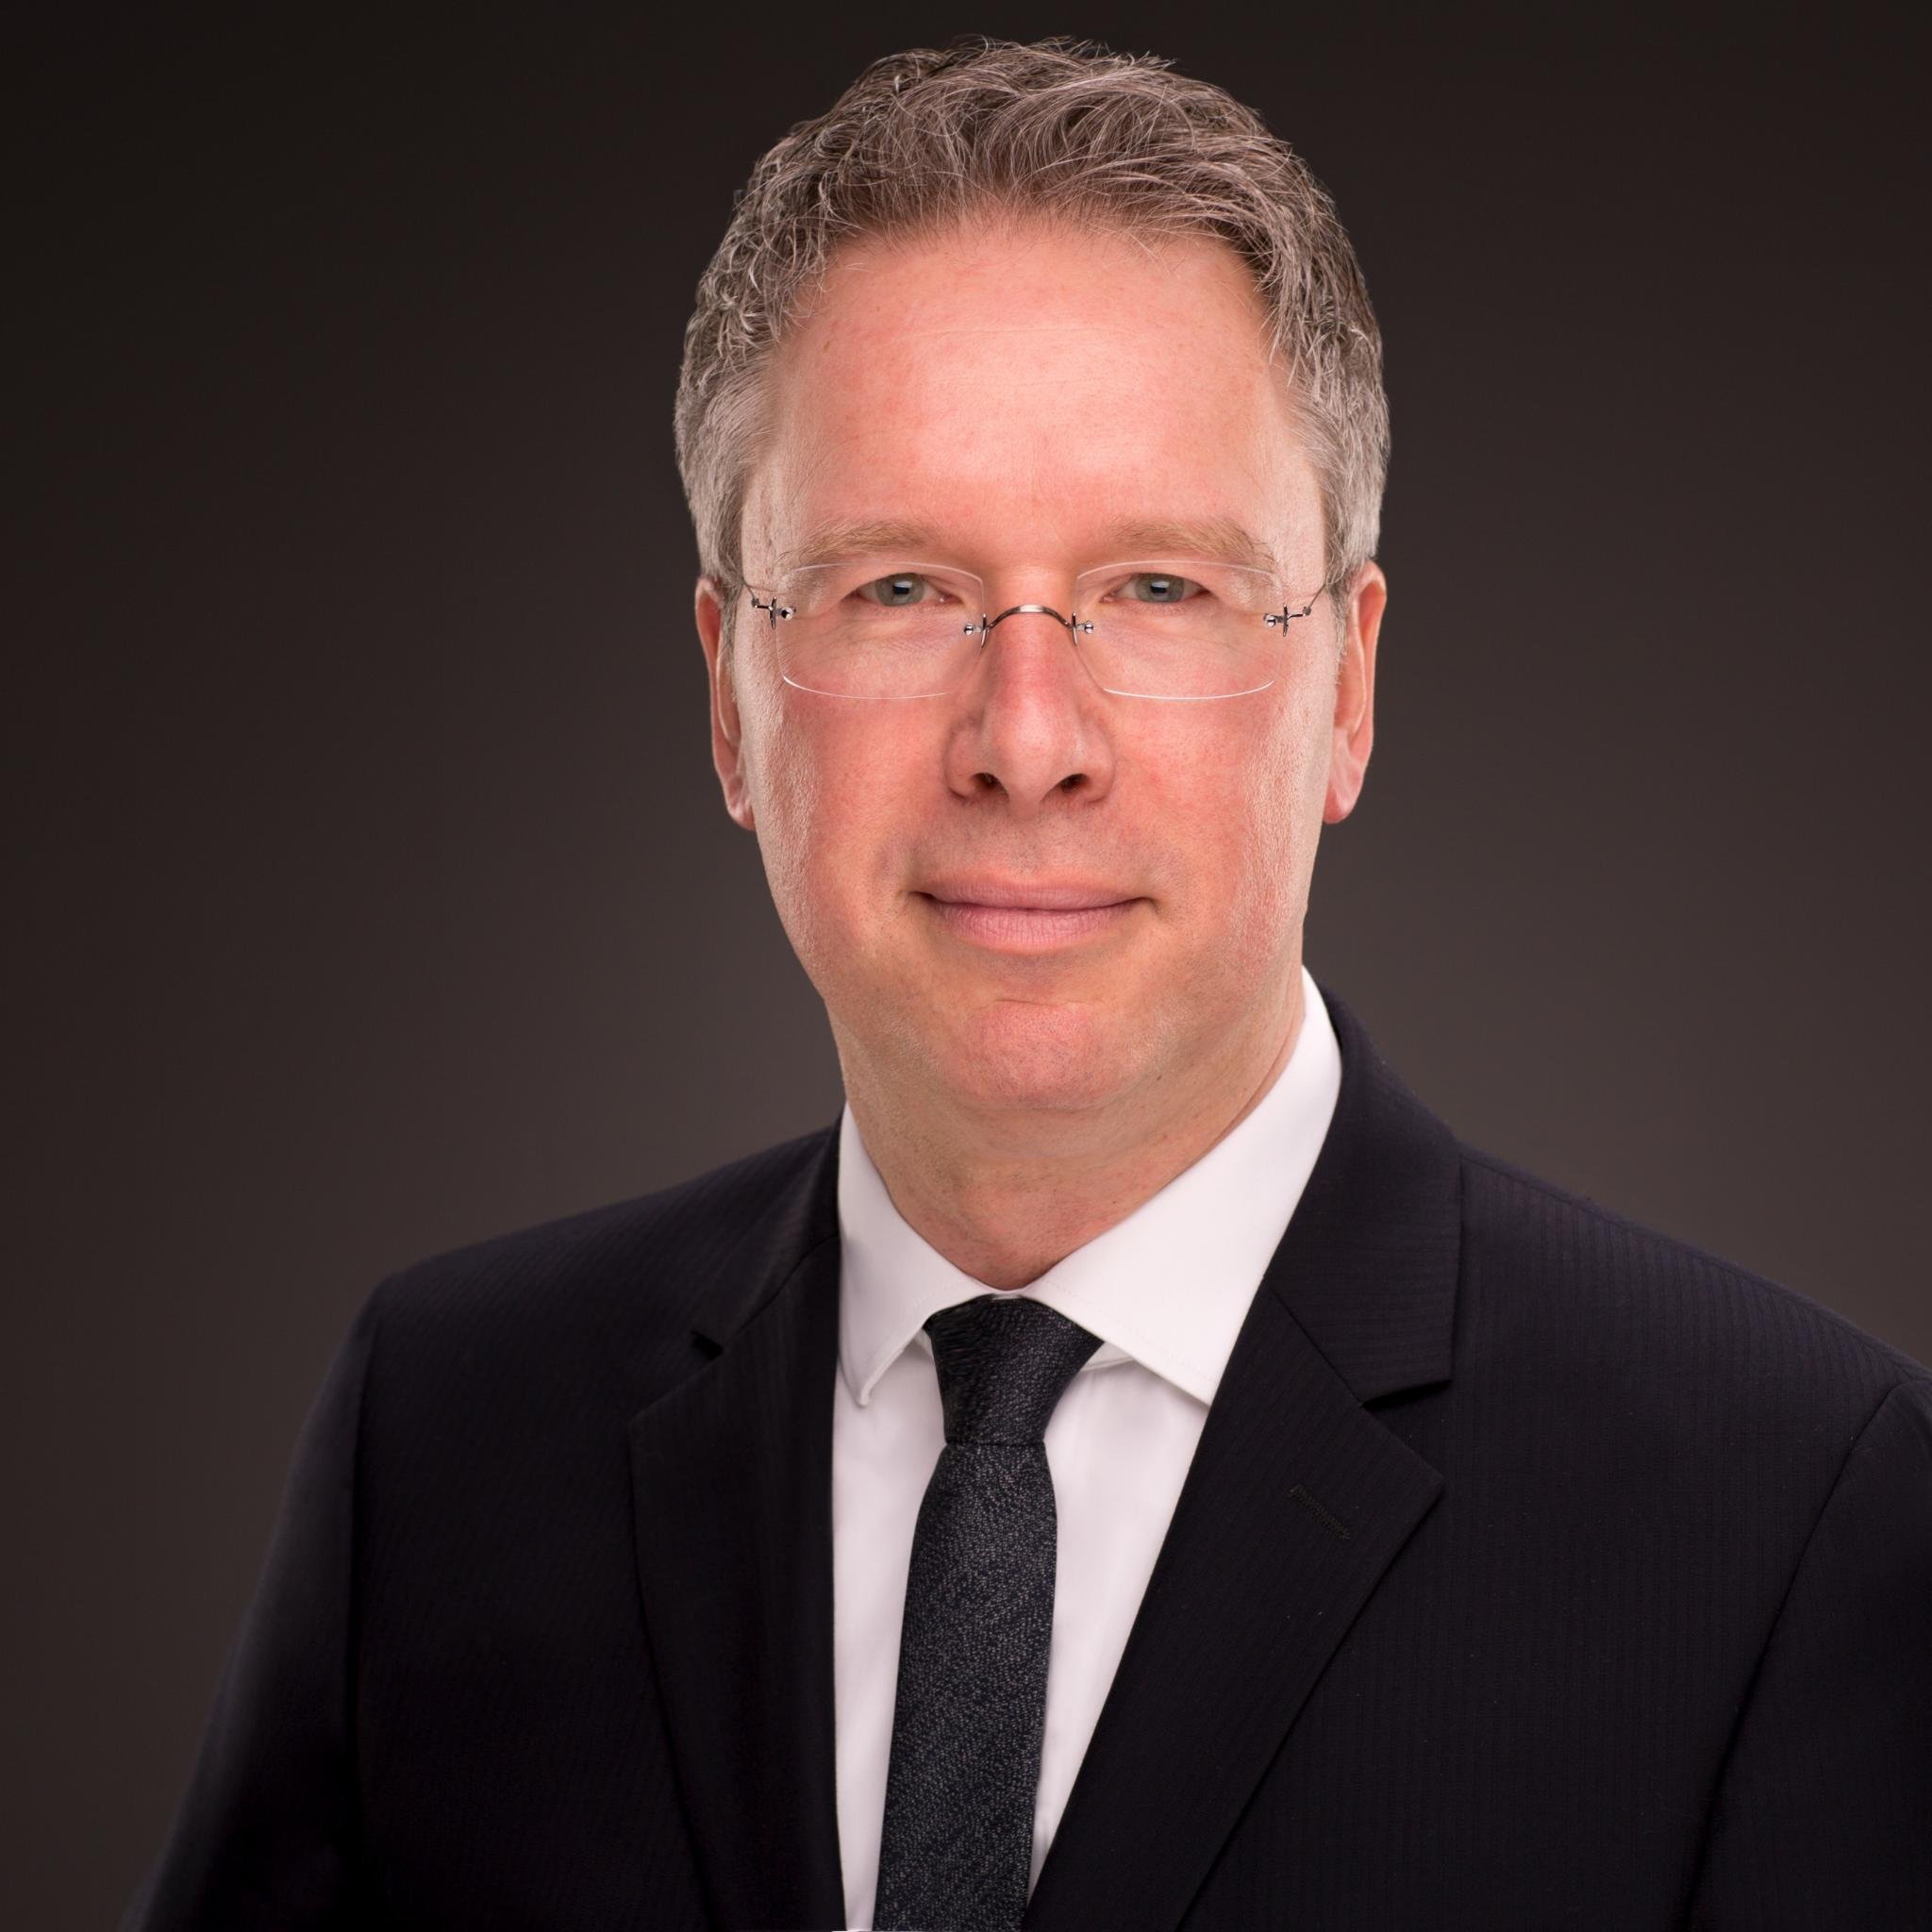 Rechtsanwalt Thomas Feil, Fachanwalt für IT-Recht (Schwerpunkt Datenschutzrecht)